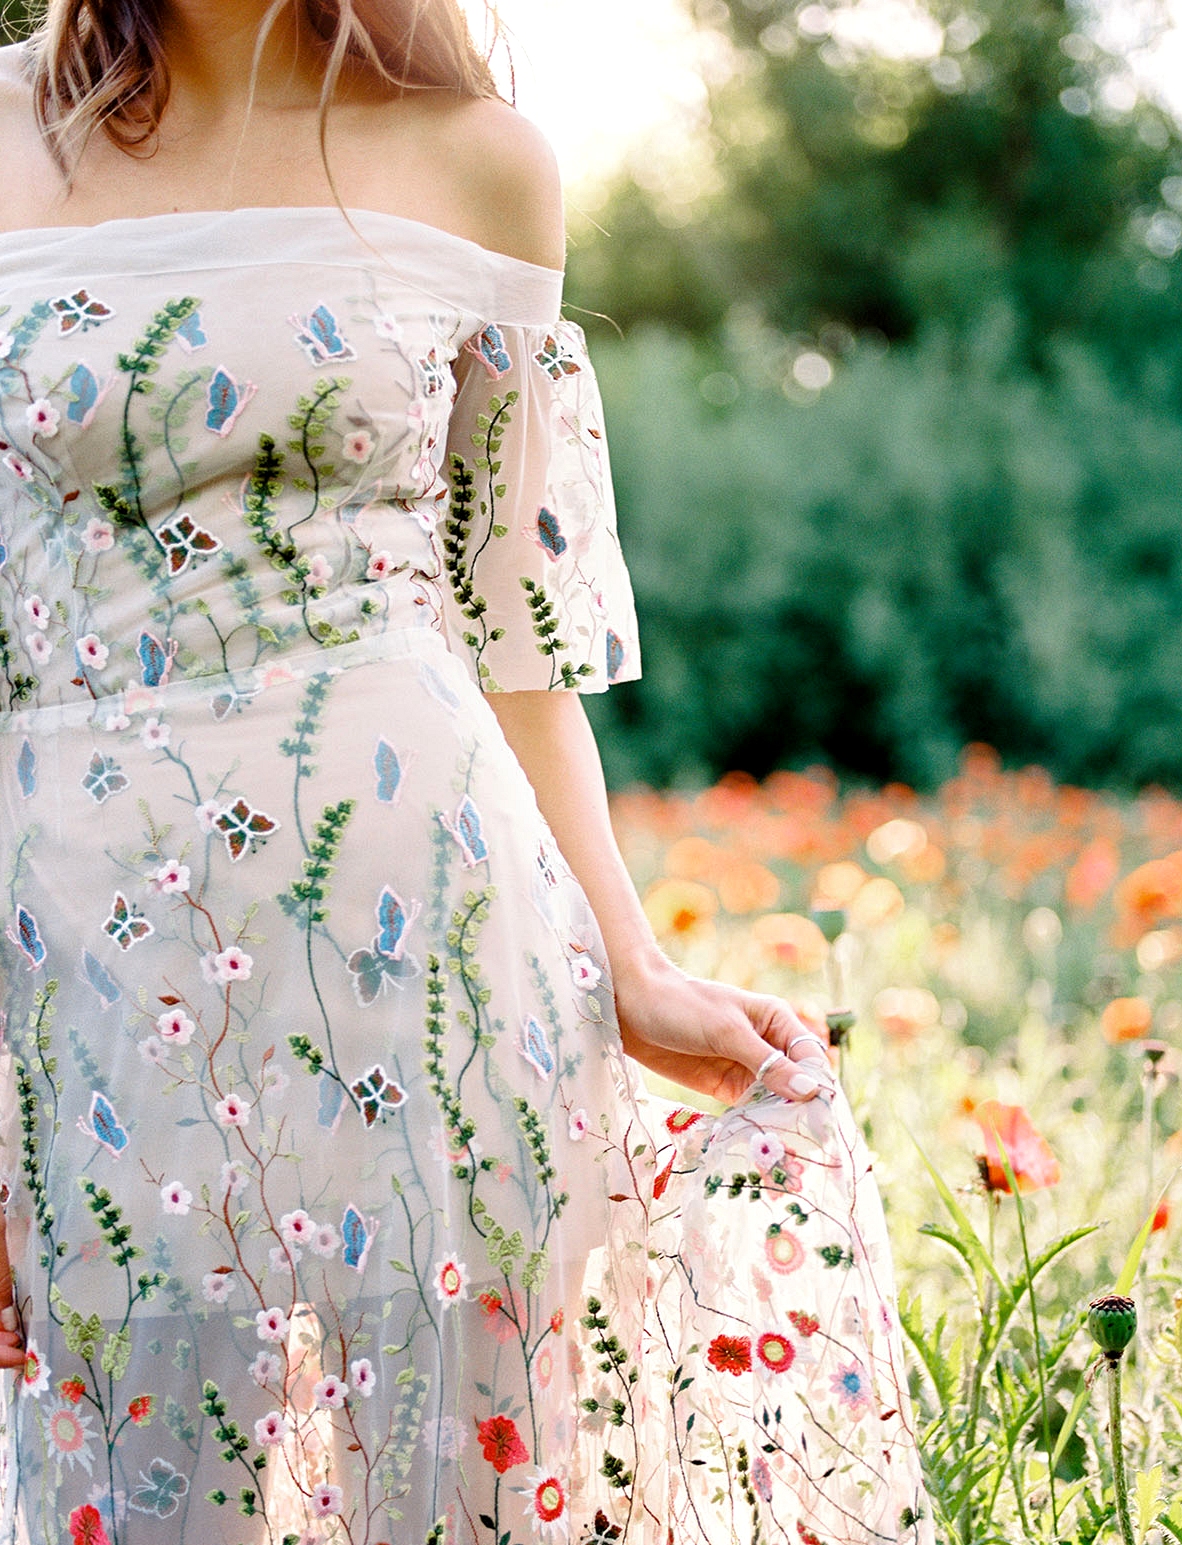 Wildflower Gown Wedding Inspiration